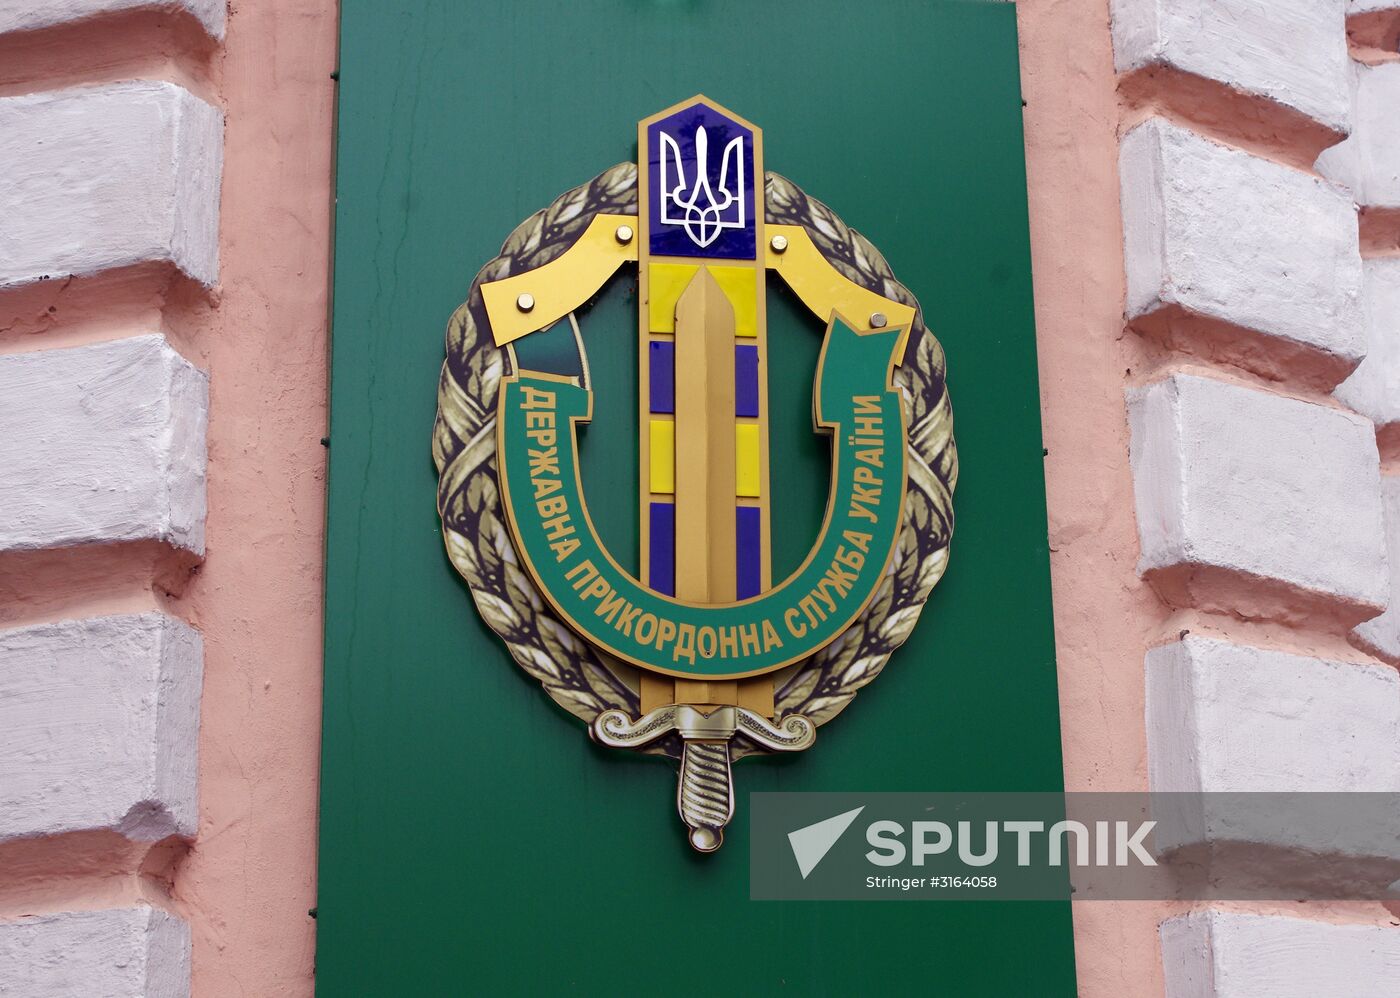 Ukrainian Customs Service's coat of arms